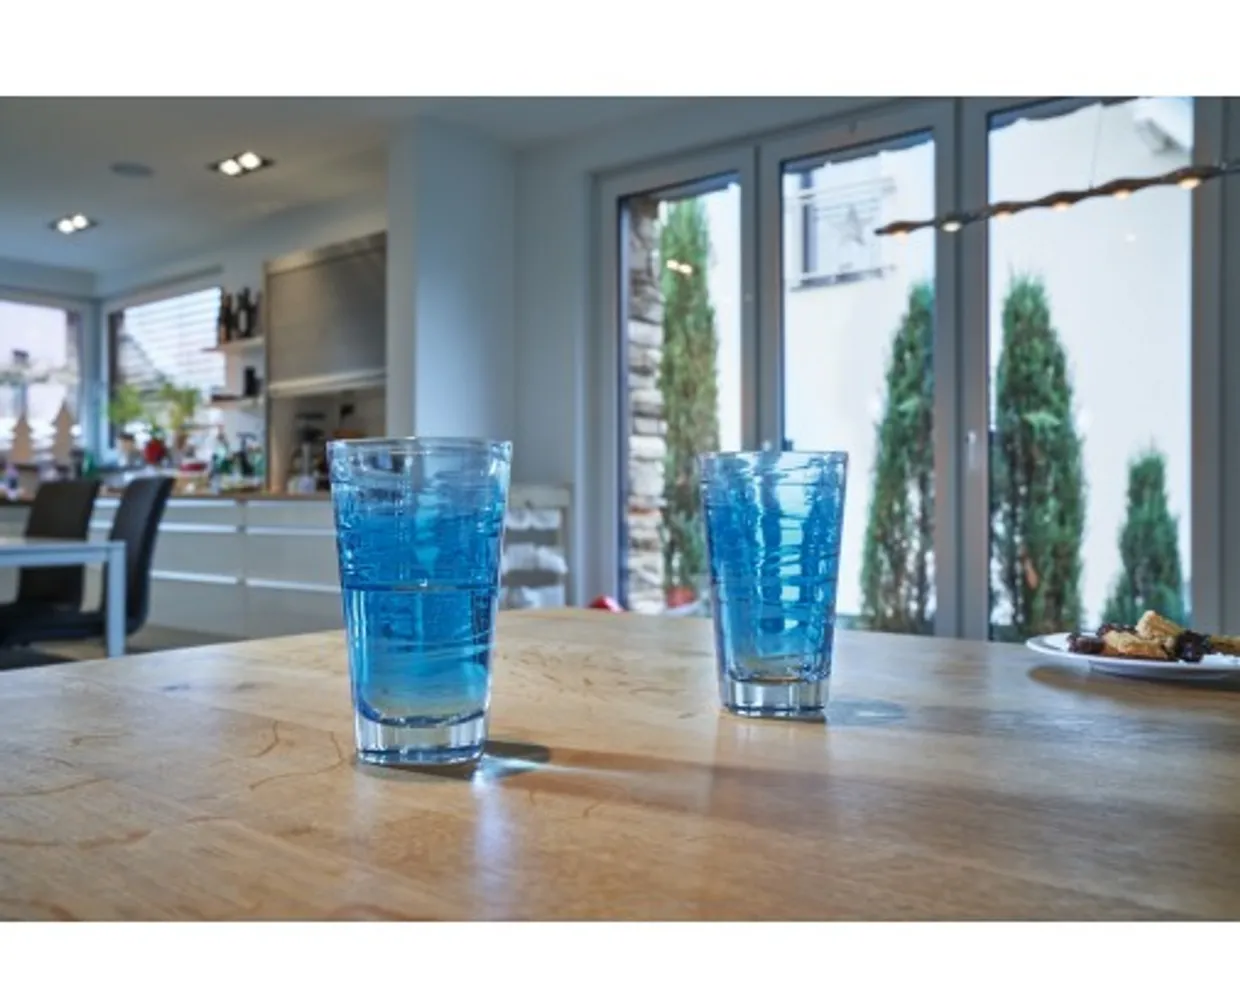 Longdrinkglas Vario 280ml - blauw